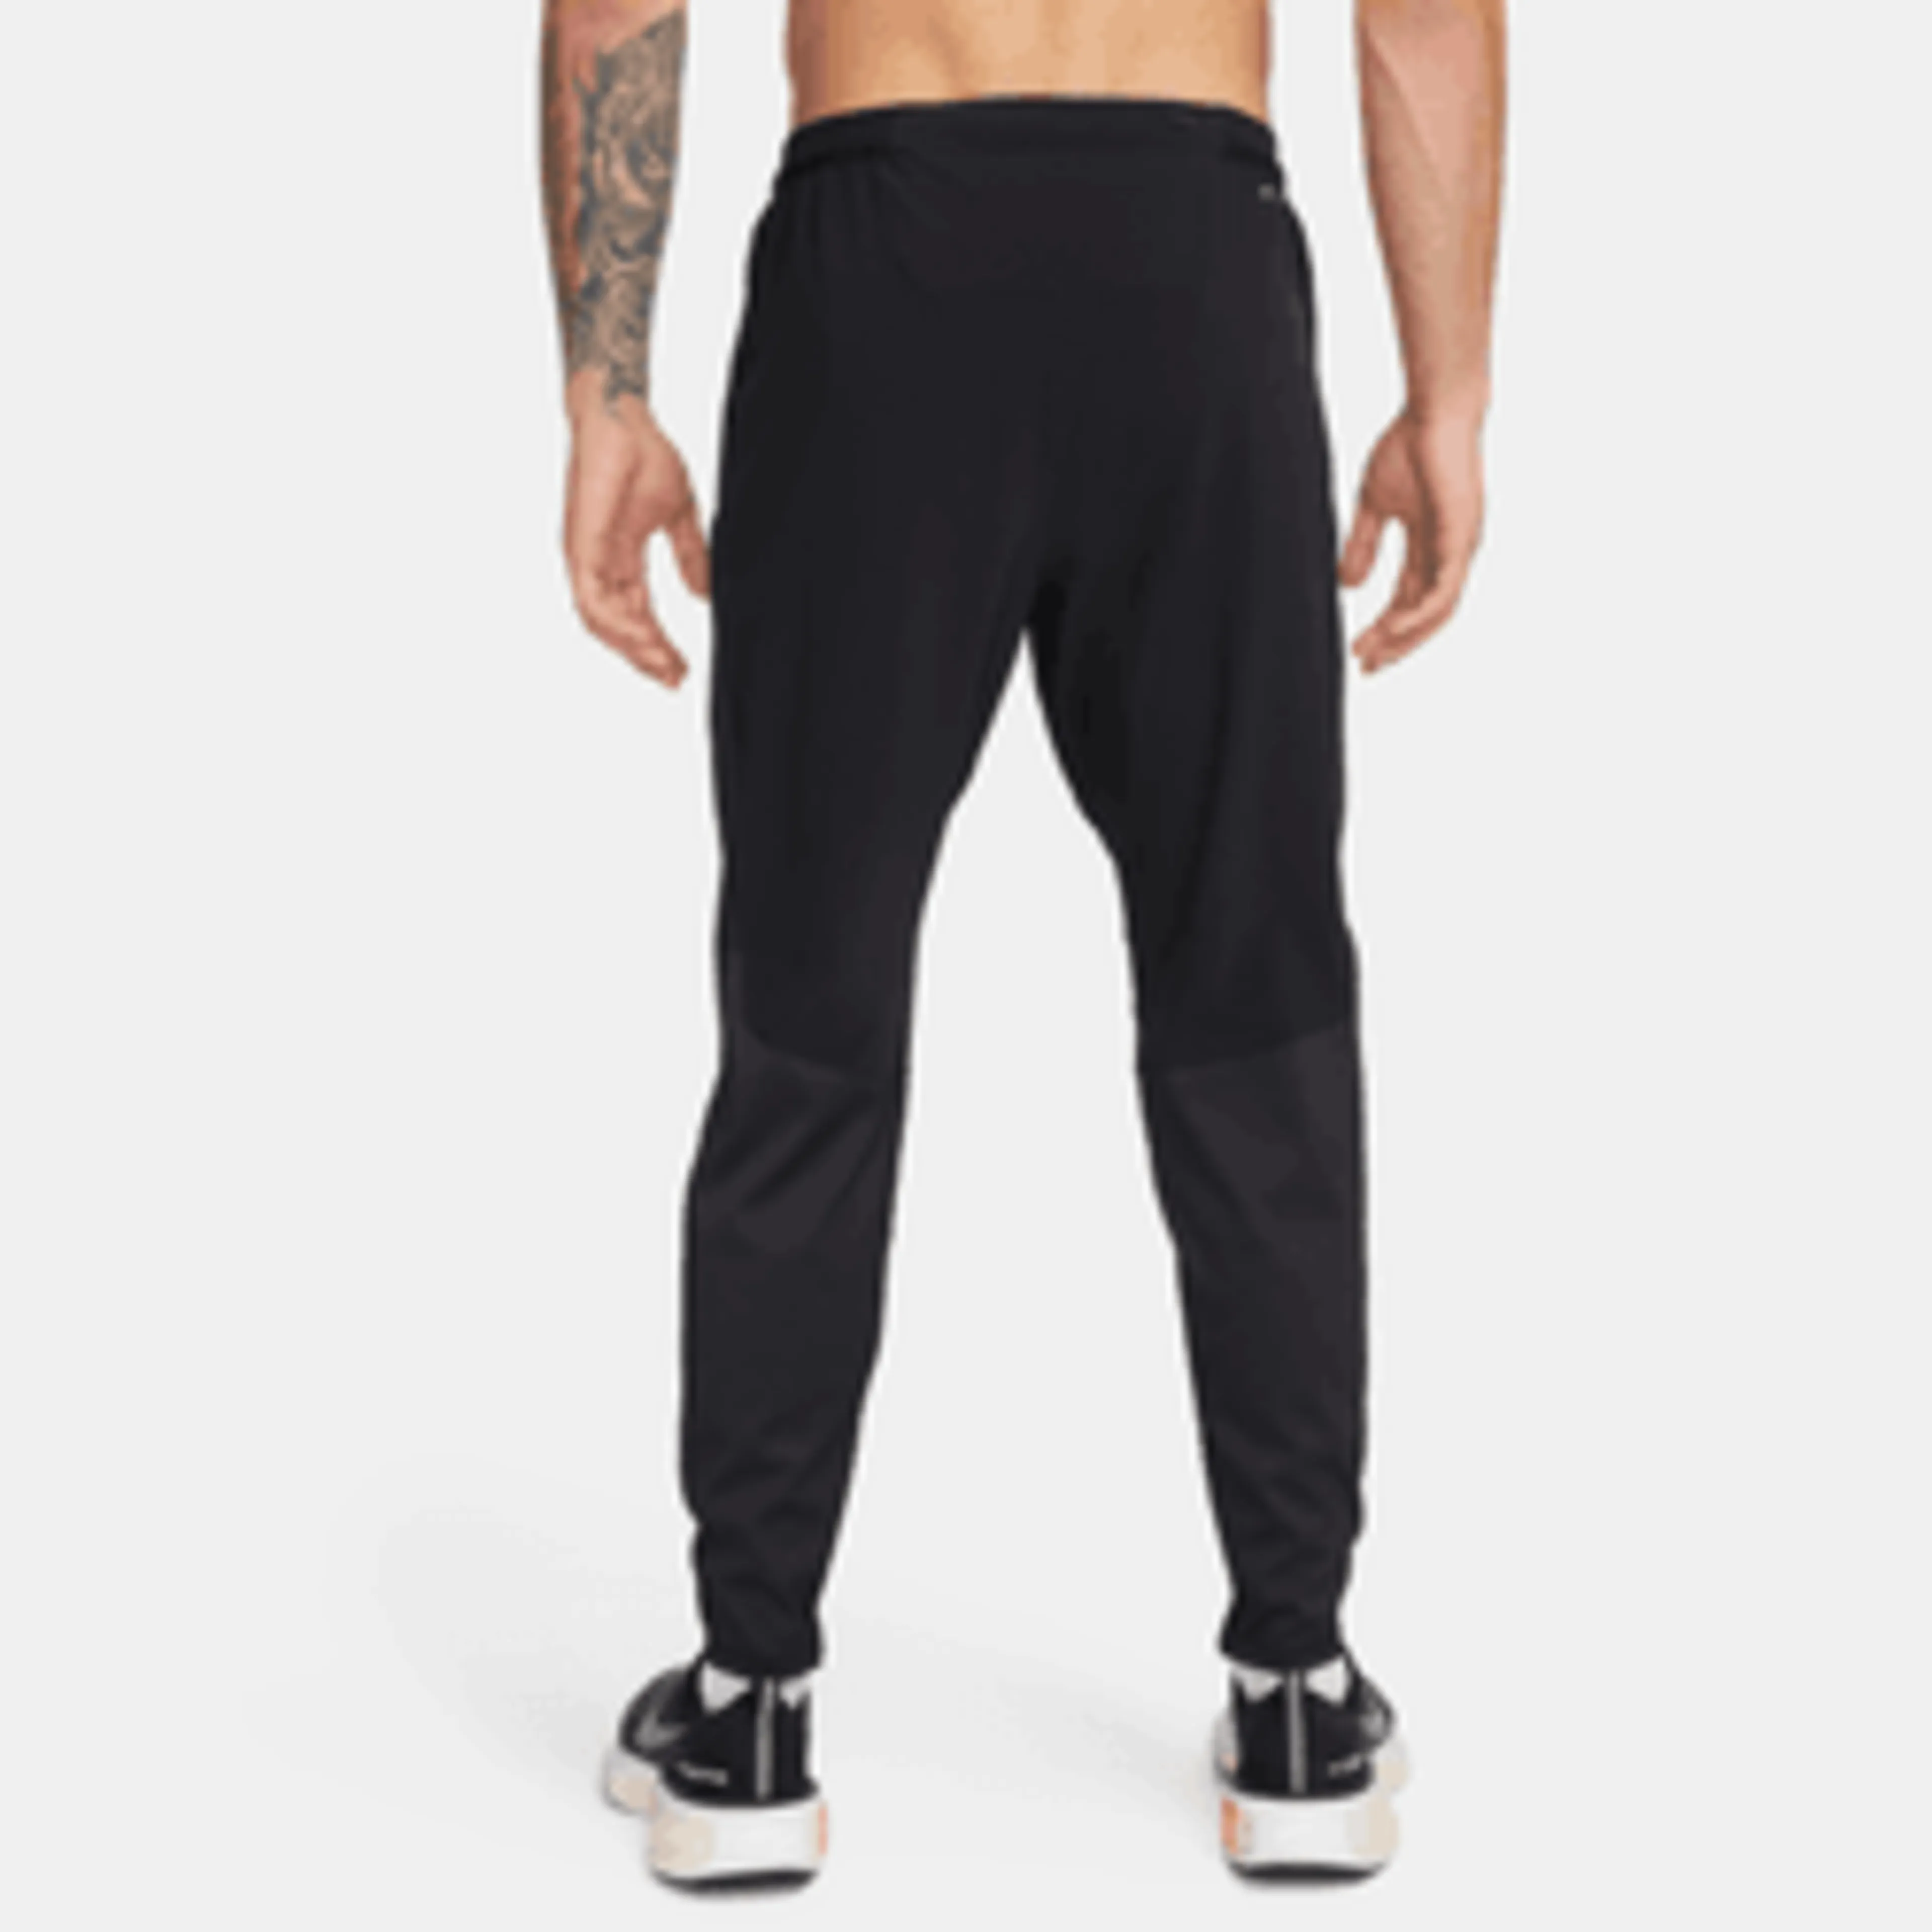 Nike Dri-Fit AeroSwift Running Pants